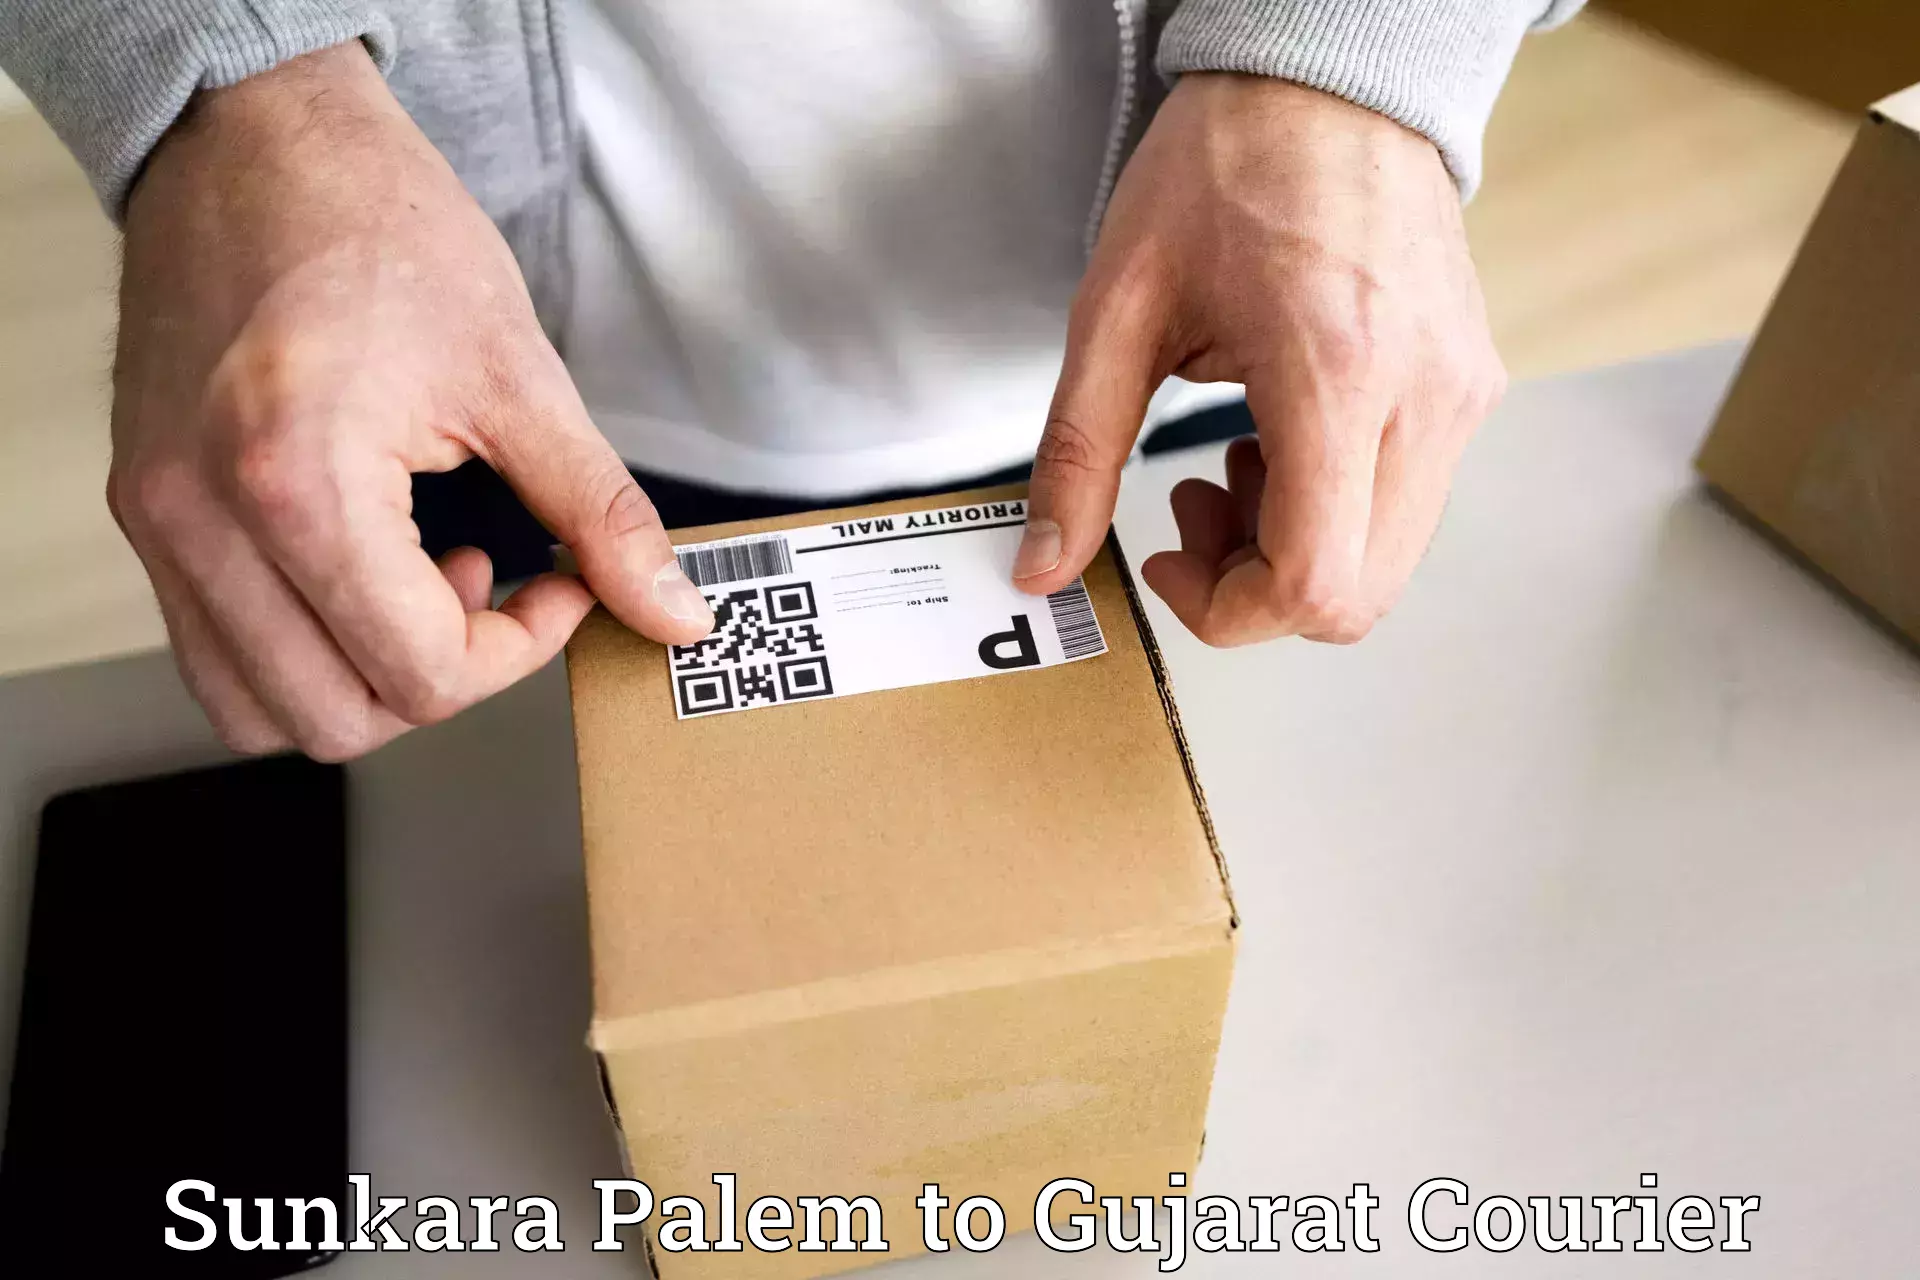 Courier service comparison Sunkara Palem to Jambusar